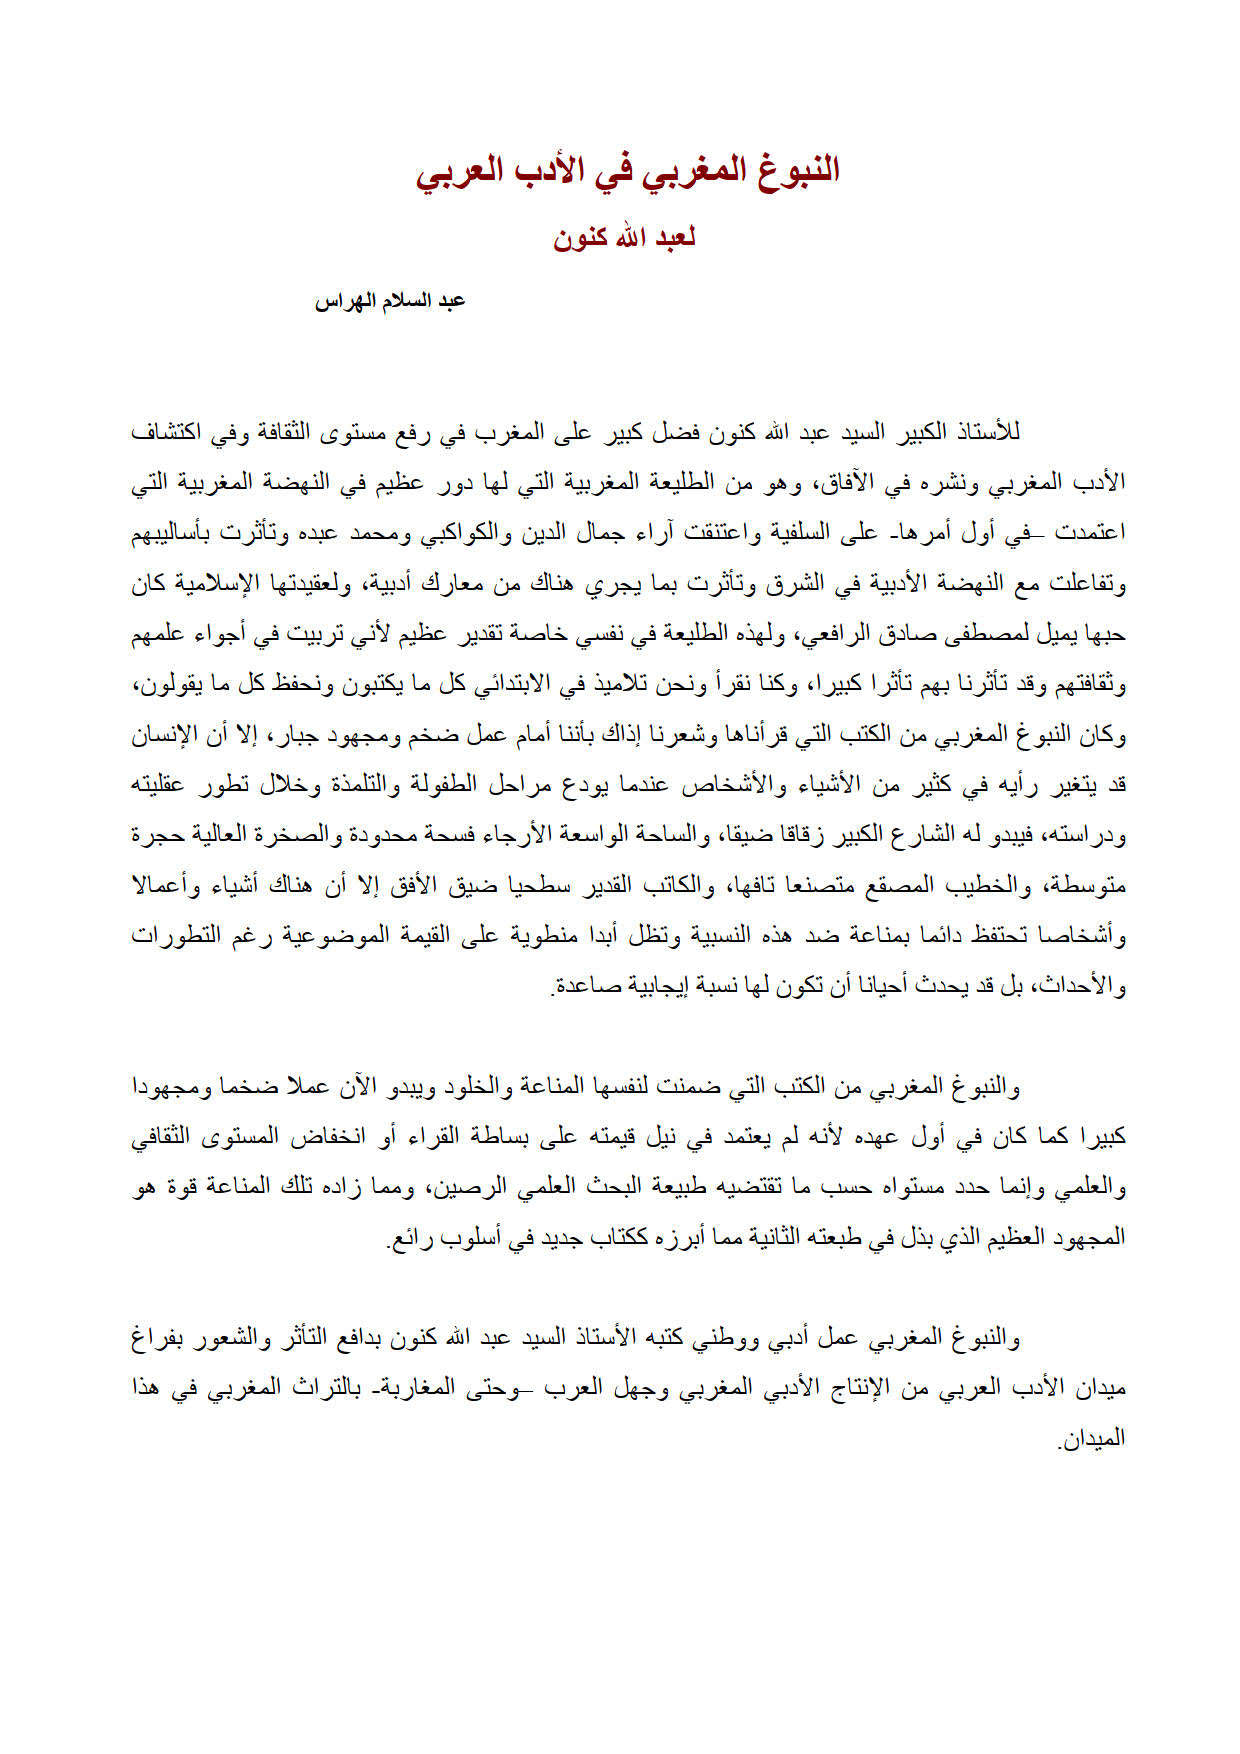 النبوغ المغربي في الأدب العربي لعبد الله كنون _ مقالة في مجلة دعوة الحق